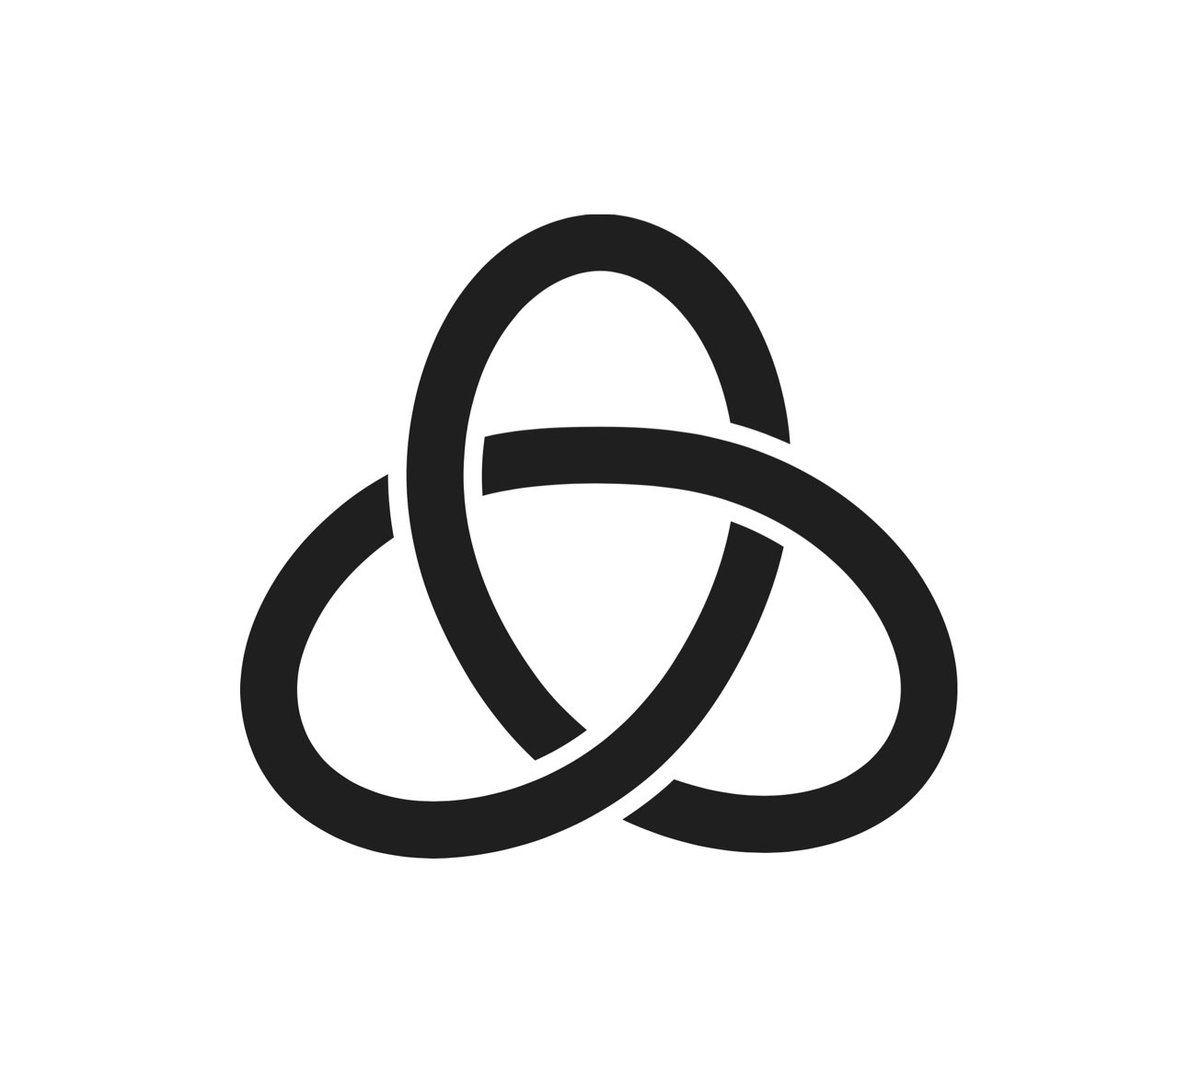 Redux Logo - Dan Abramov on Twitter: 